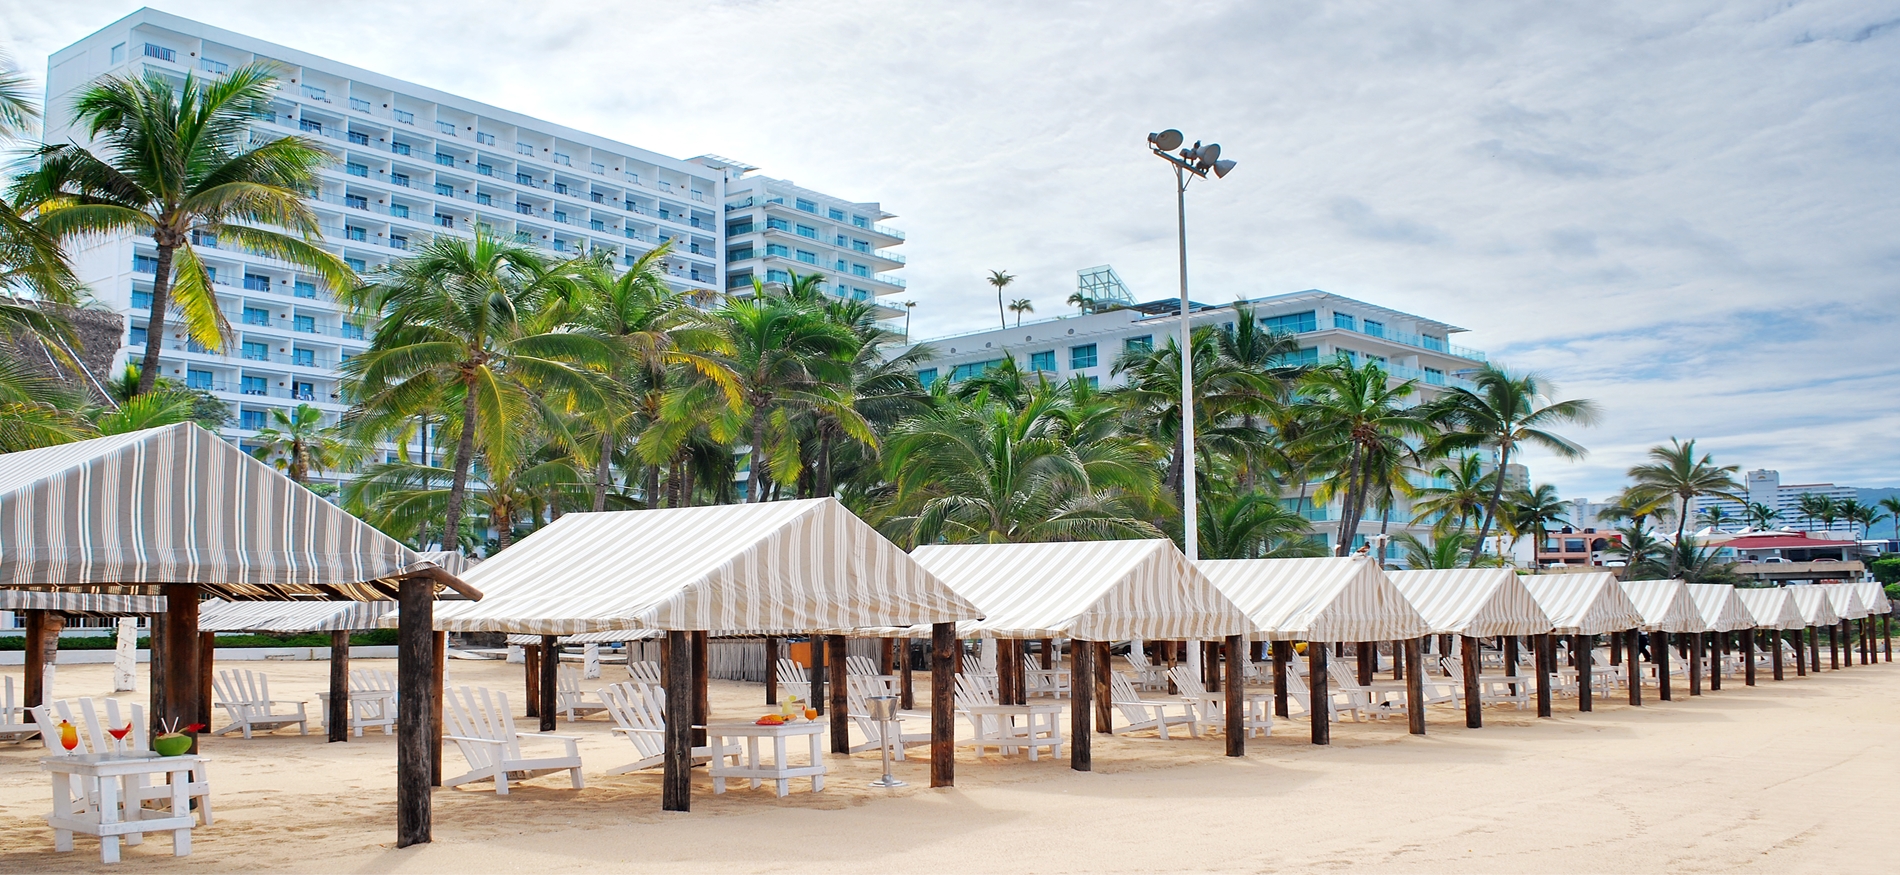 Hotel de lujo en la zona Dorada de Acapulco con entrada al mar